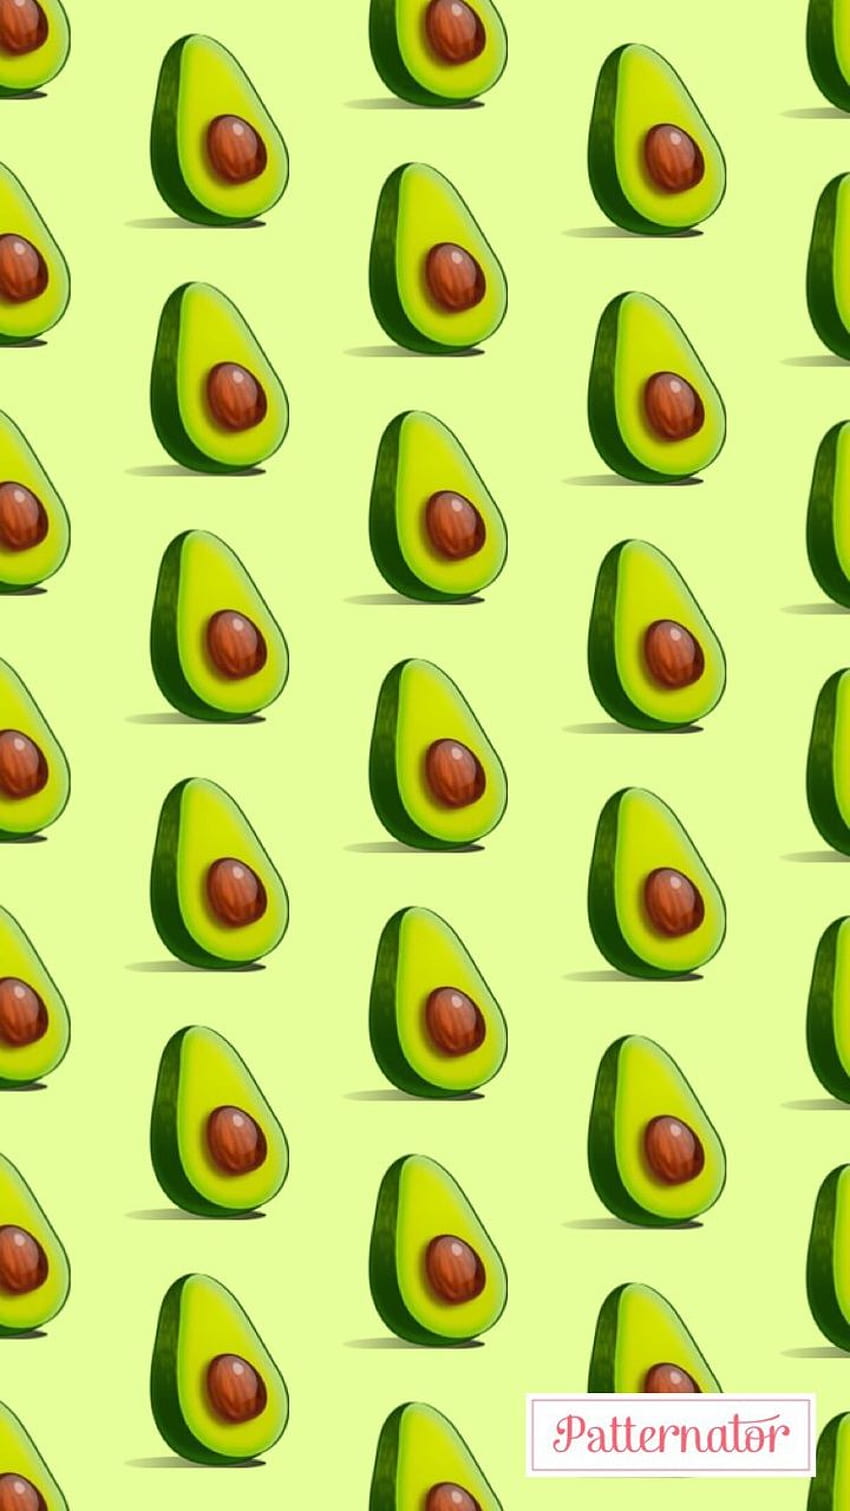 Avocado, Avocado Green HD phone wallpaper